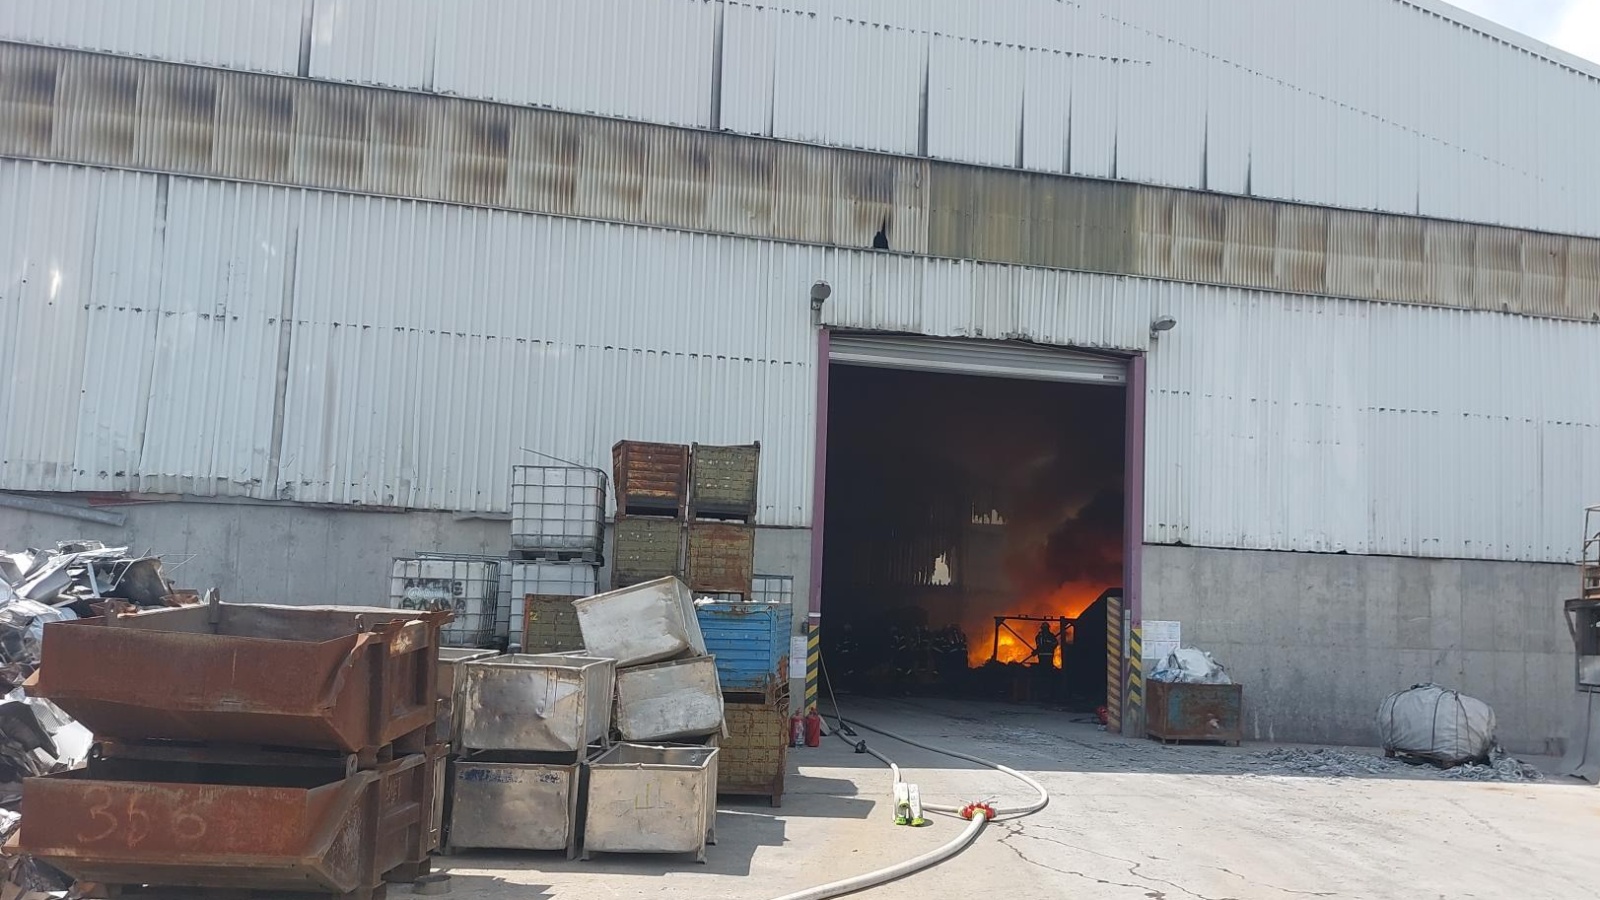 006-Požár ve firmě na zpracování kovového a nekovového odpadu na Dobříšsku.jpg